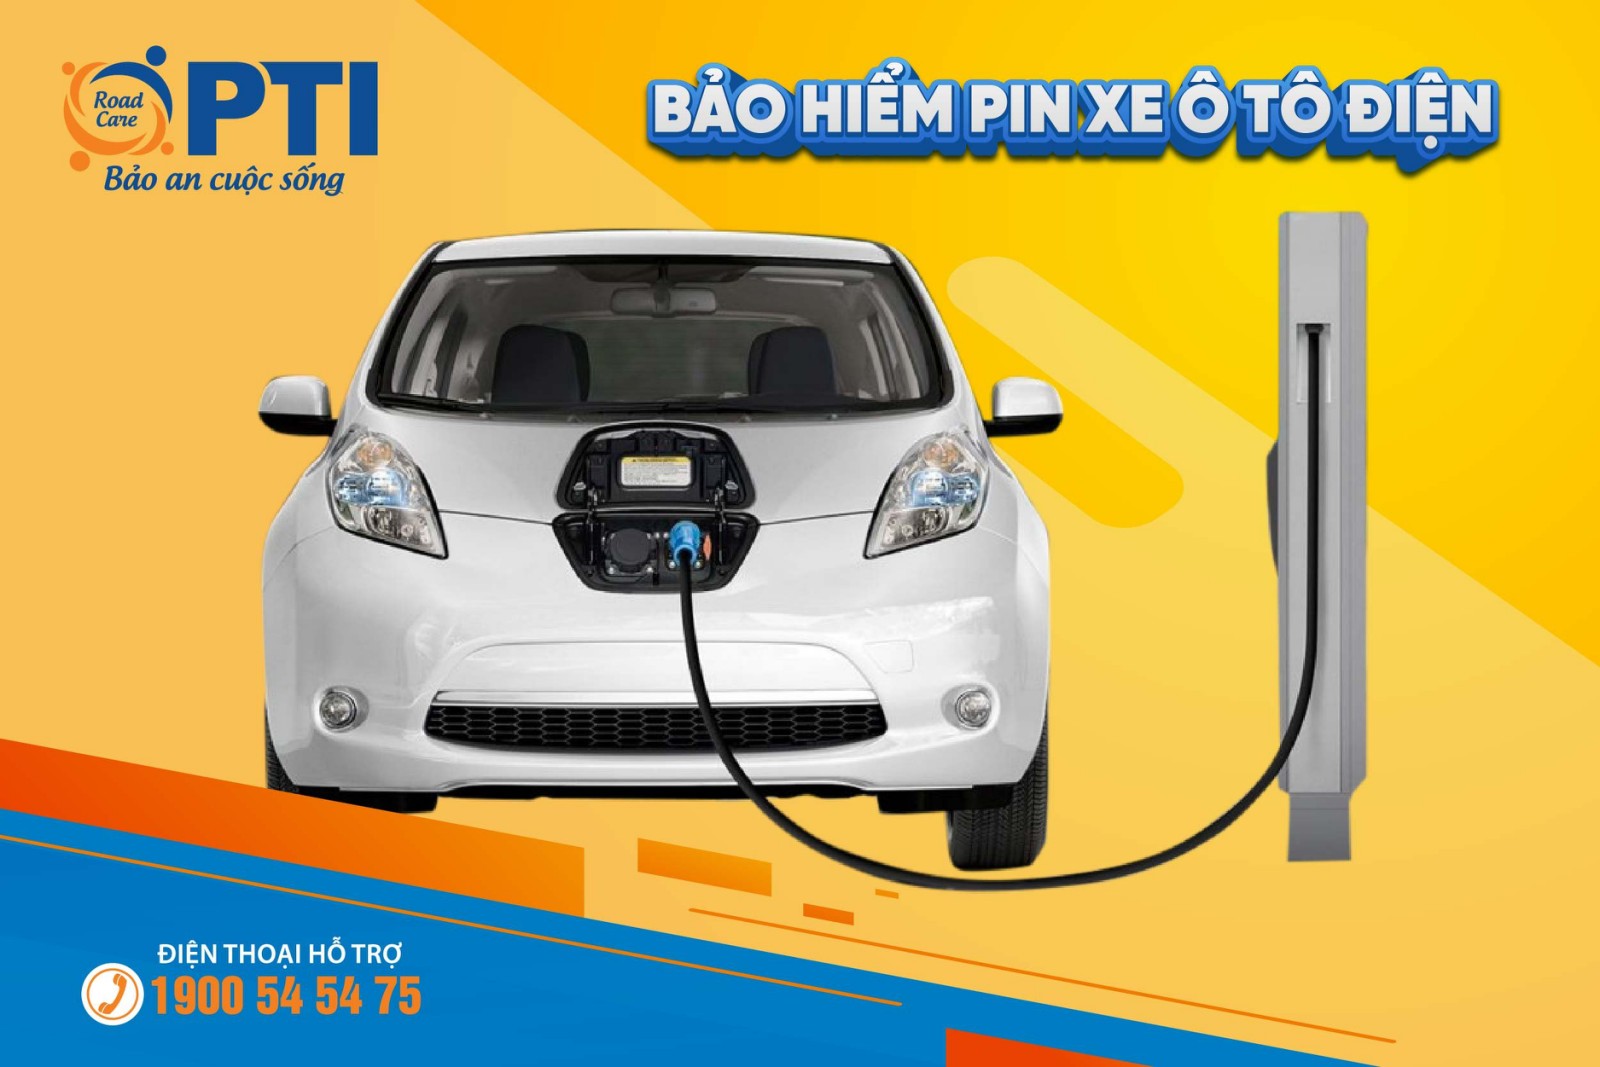 Bảo hiểm thiệt hại vật chất PIN xe ô tô điện giờ đây đã trở nên dễ dàng hơn bao giờ hết. Với sự phát triển của ngành công nghiệp ô tô điện, các công ty bảo hiểm đã chủ động cung cấp các gói bảo hiểm phù hợp để đảm bảo an toàn cho việc sử dụng xe ô tô điện của bạn.